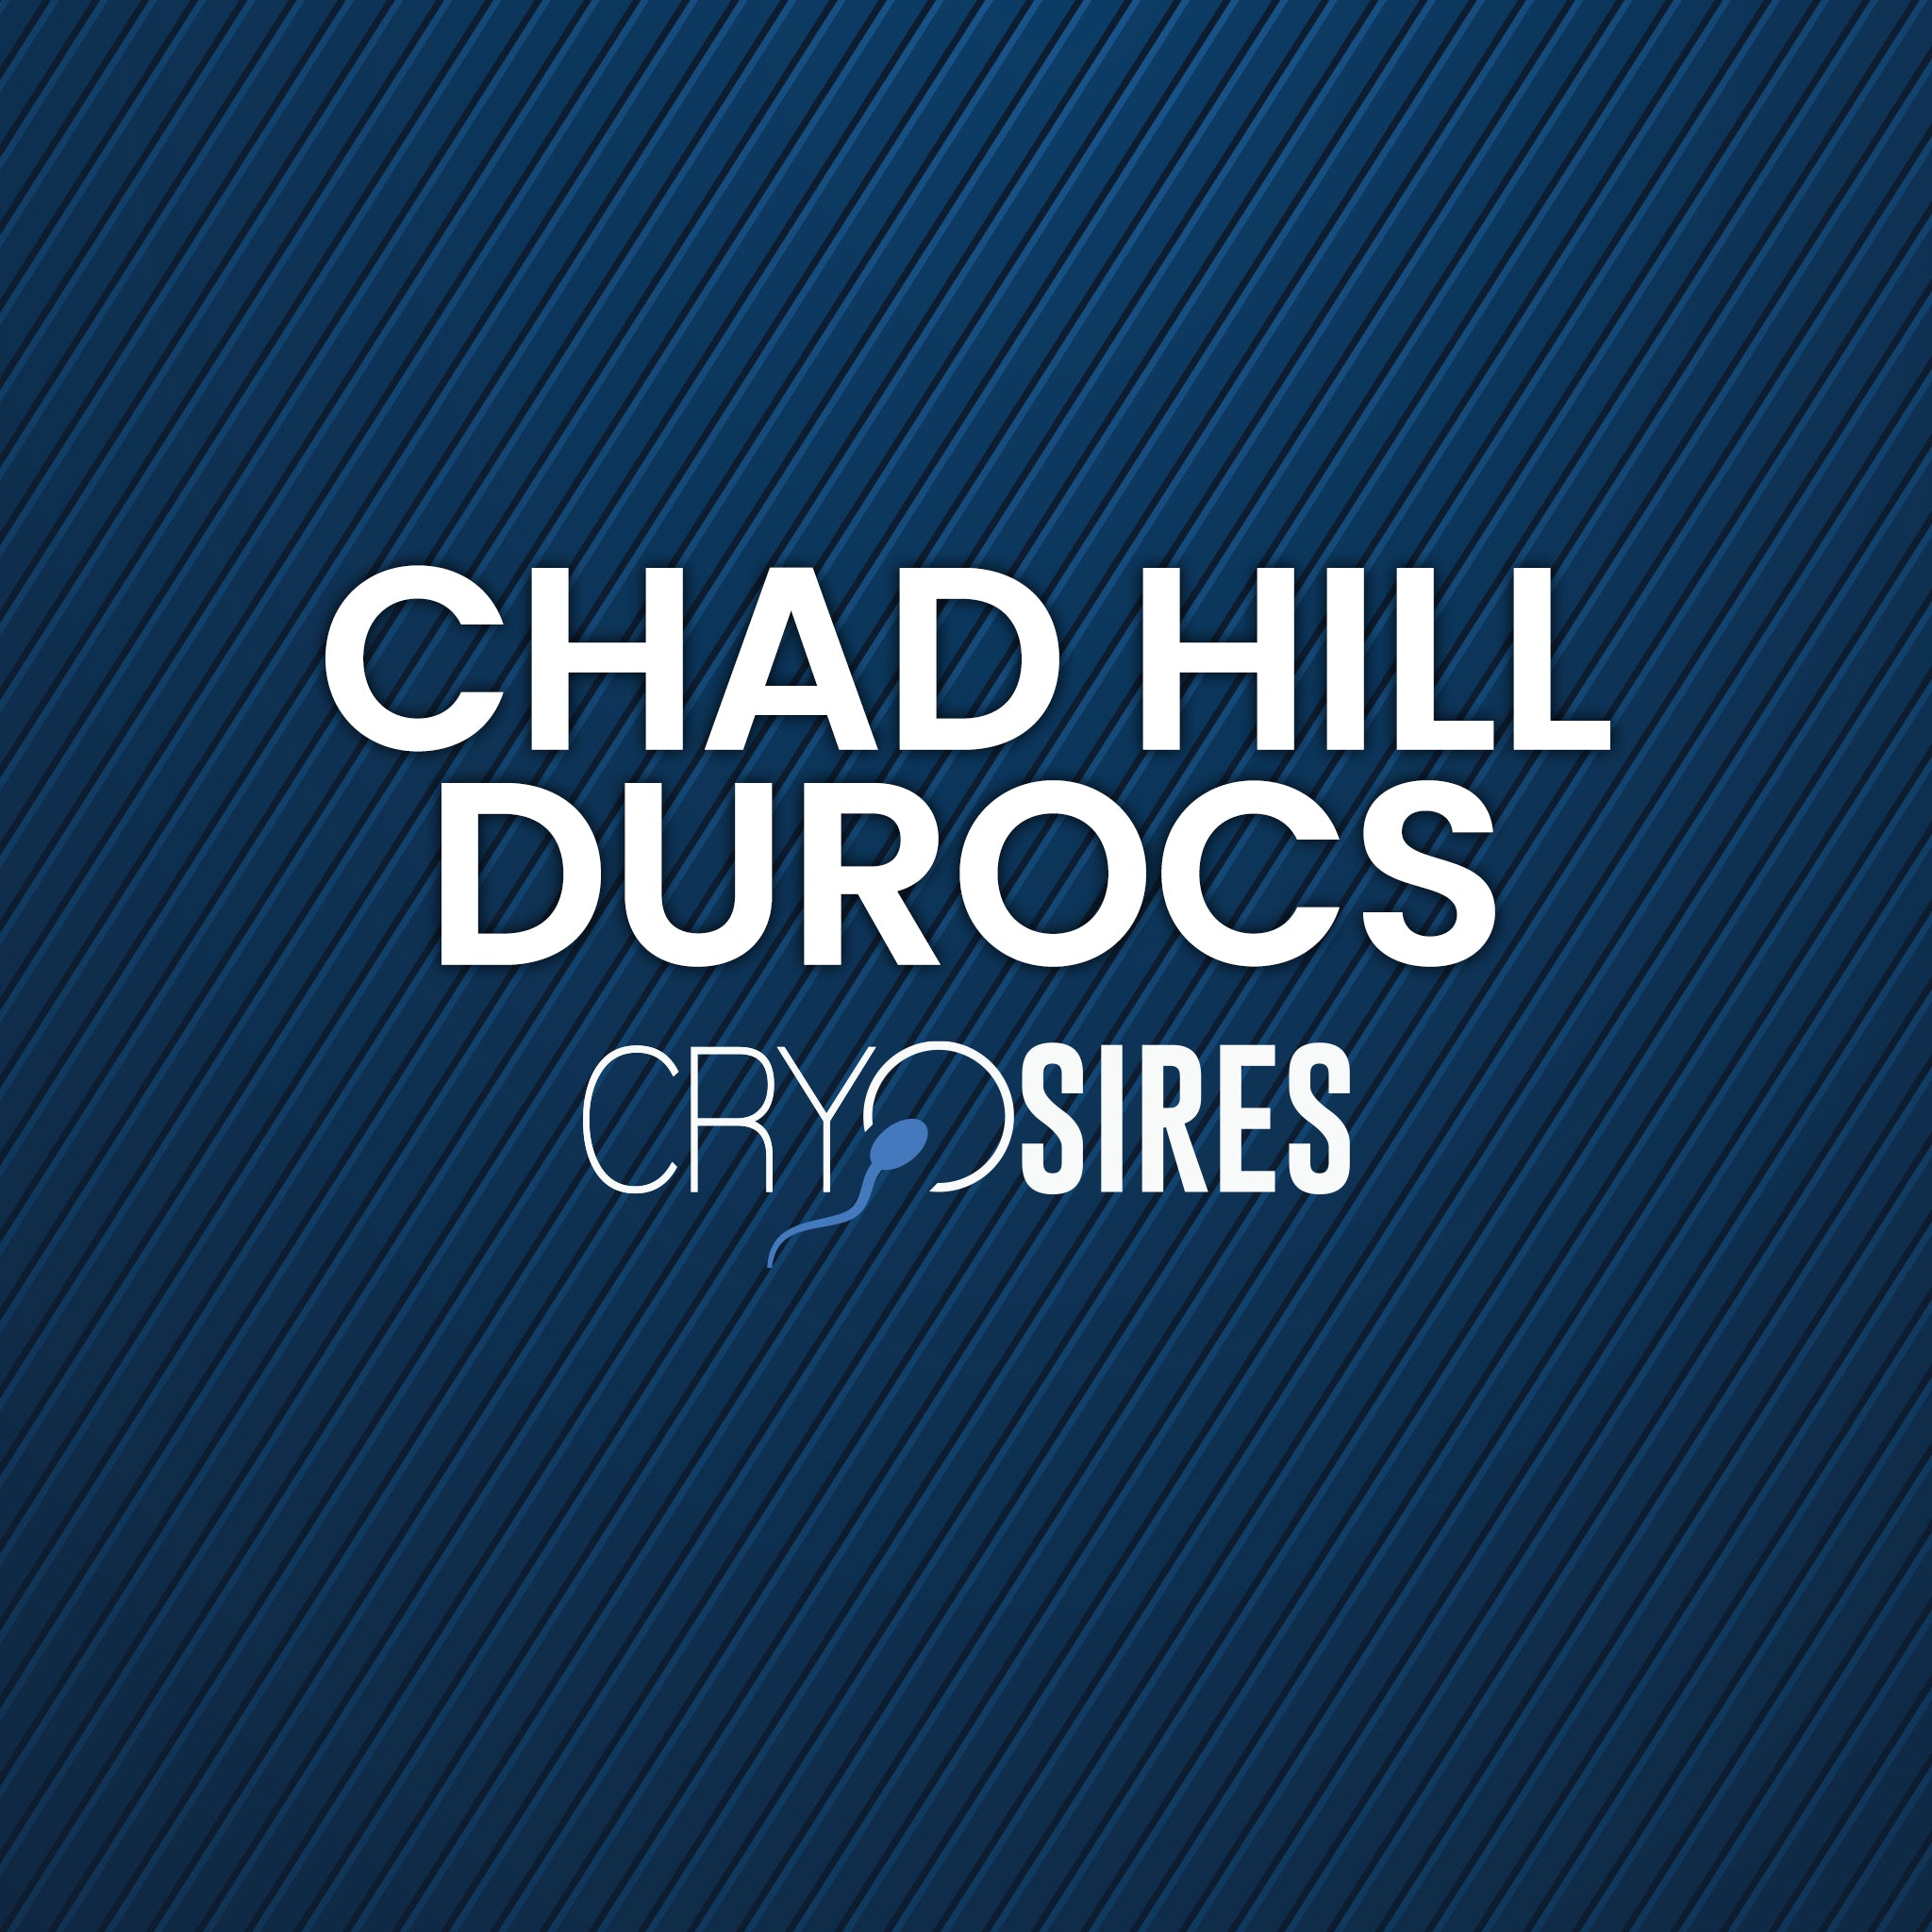 Chad Hill Durocs